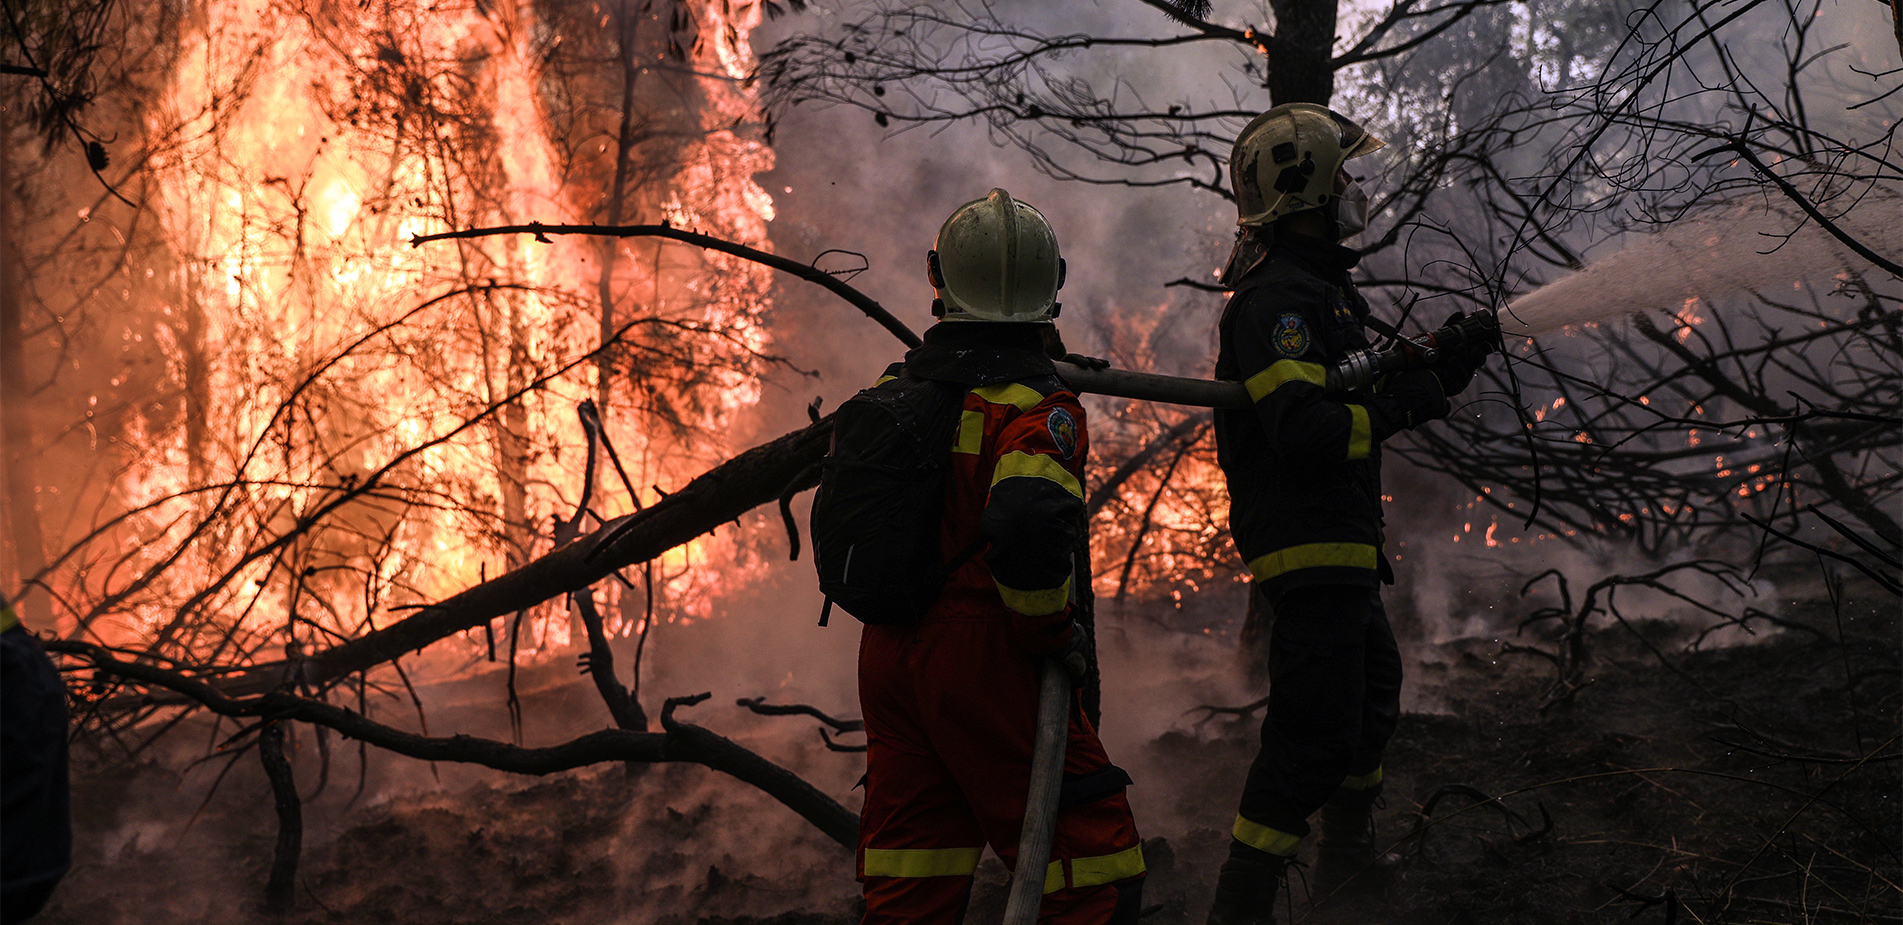 Οι πυροσβέστες και τα πυροσβεστικά οχήματα που διαθέτει η Ελλάδα σε αριθμούς &#8211; Πόσο έτοιμοι είμαστε για τις φωτιές